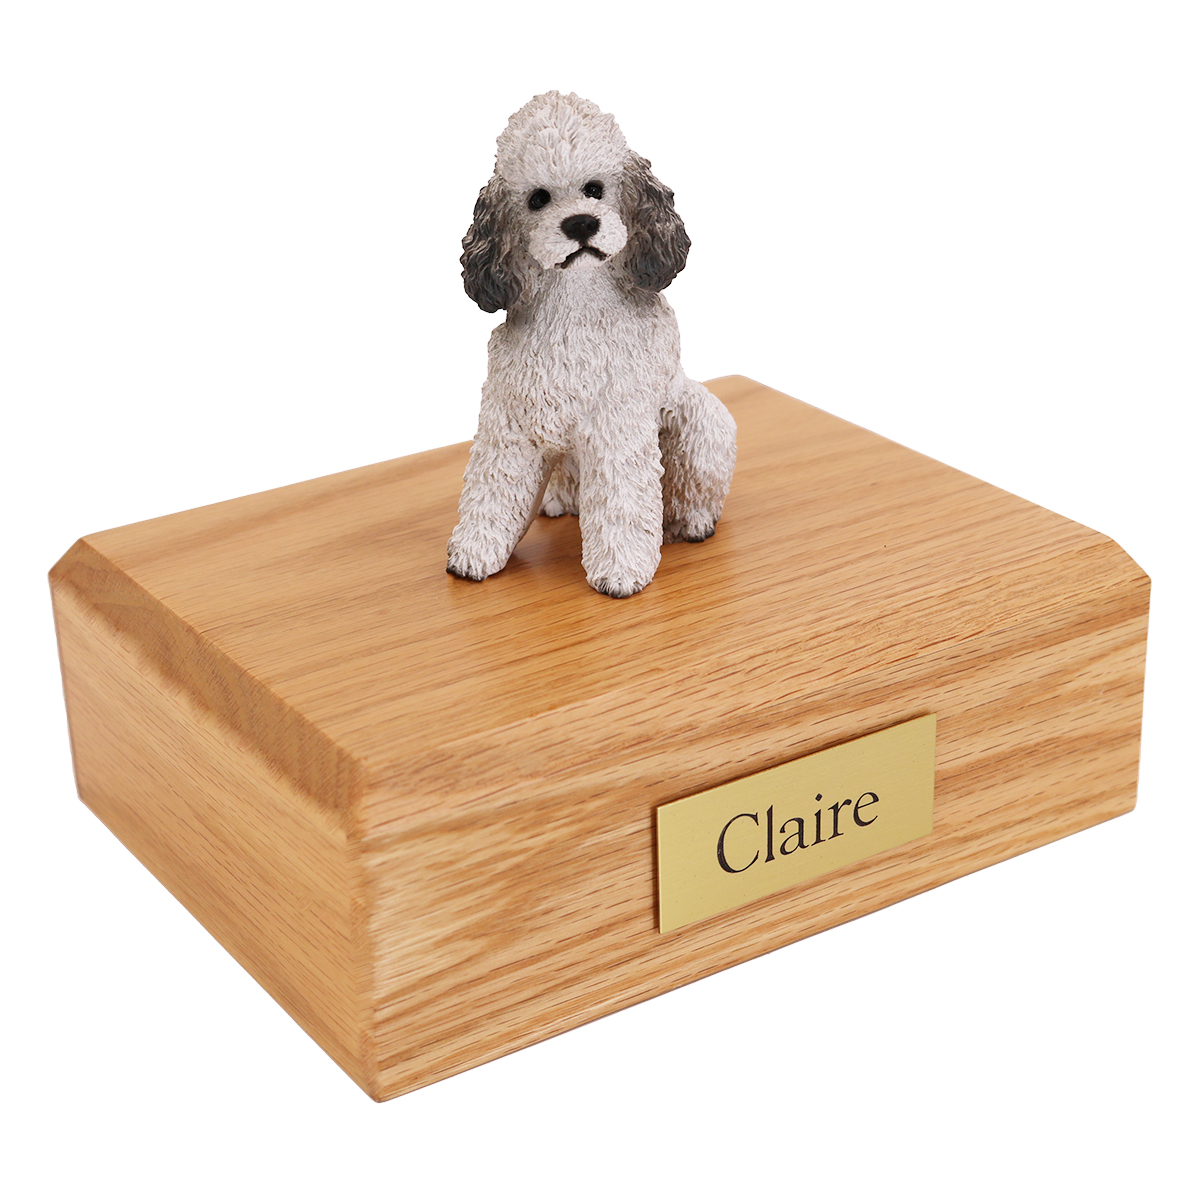 Dog, Poodle, Grey - sport cut - Figurine Urn